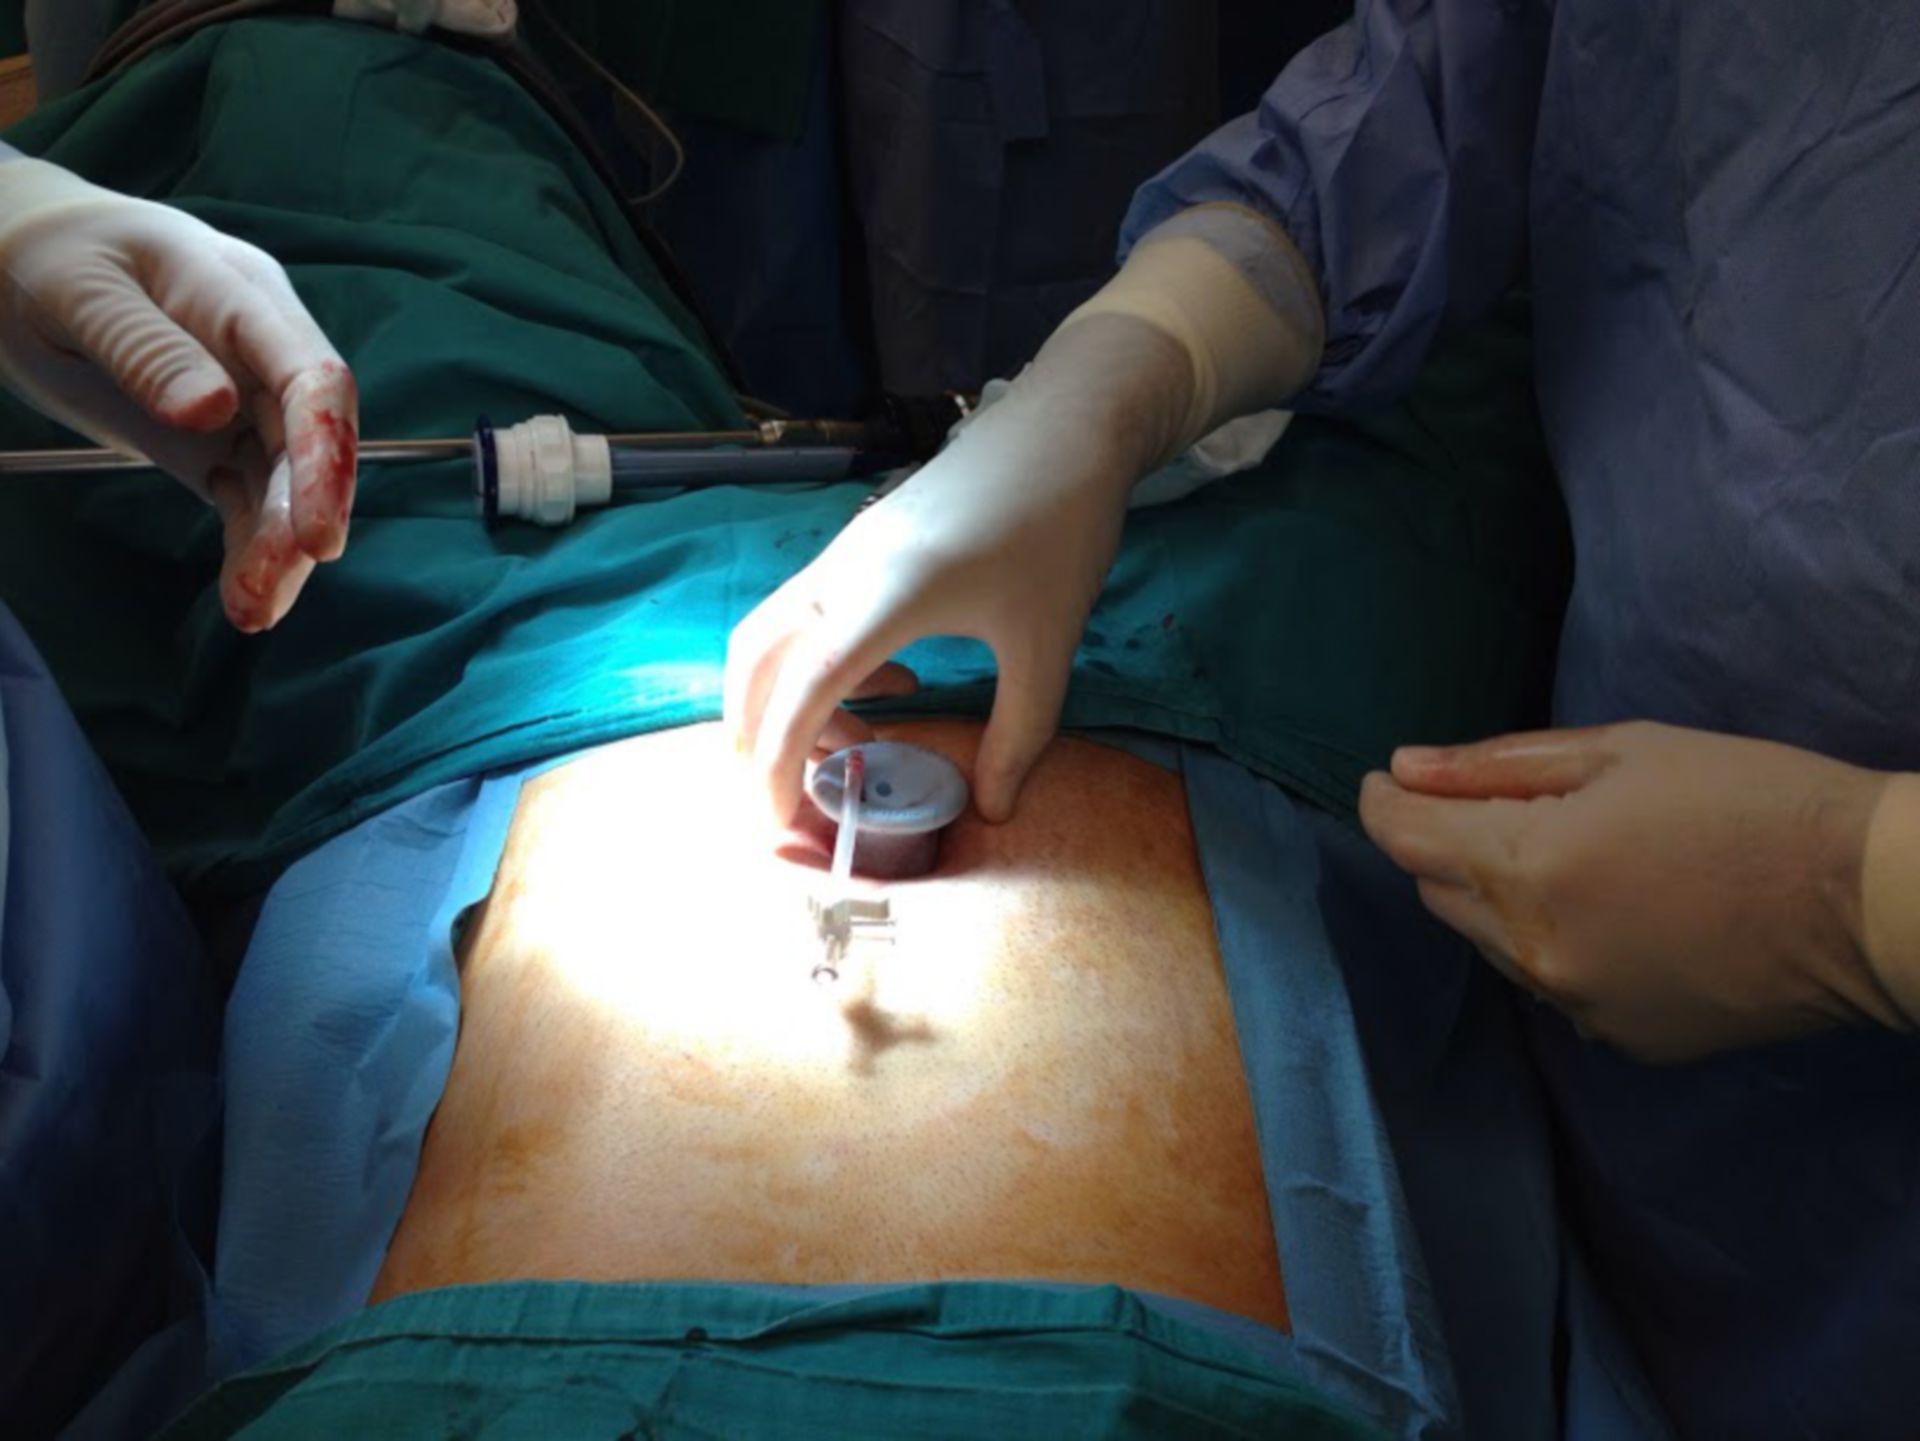 SILS (singola incisione laparoscopica Operazione)